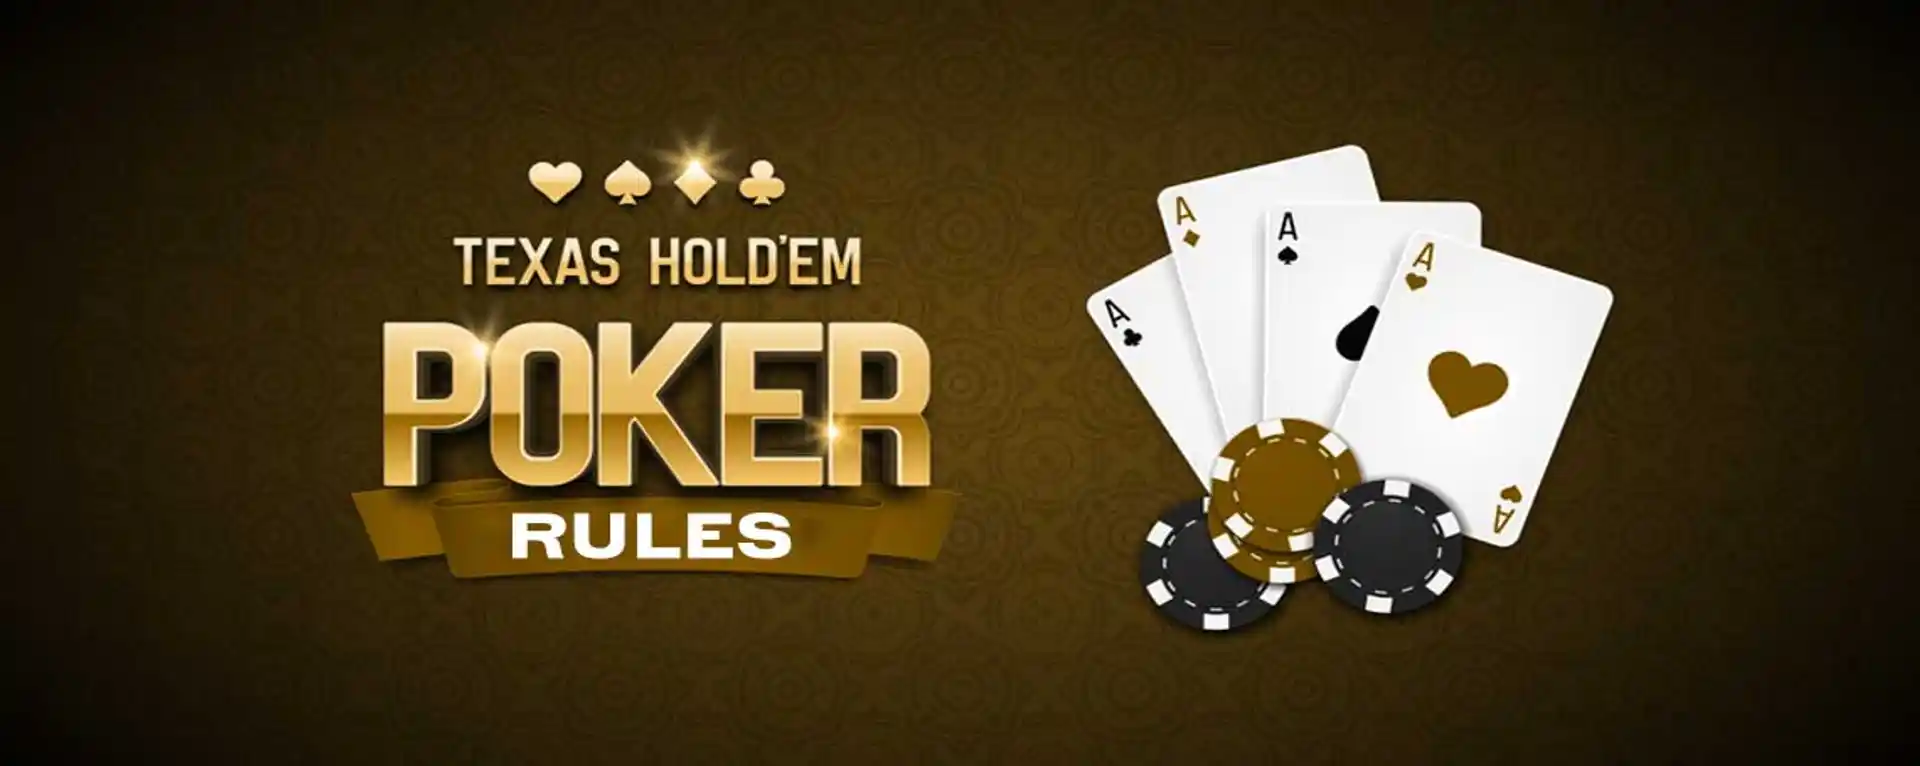 Rules of Texas Holdem Poker